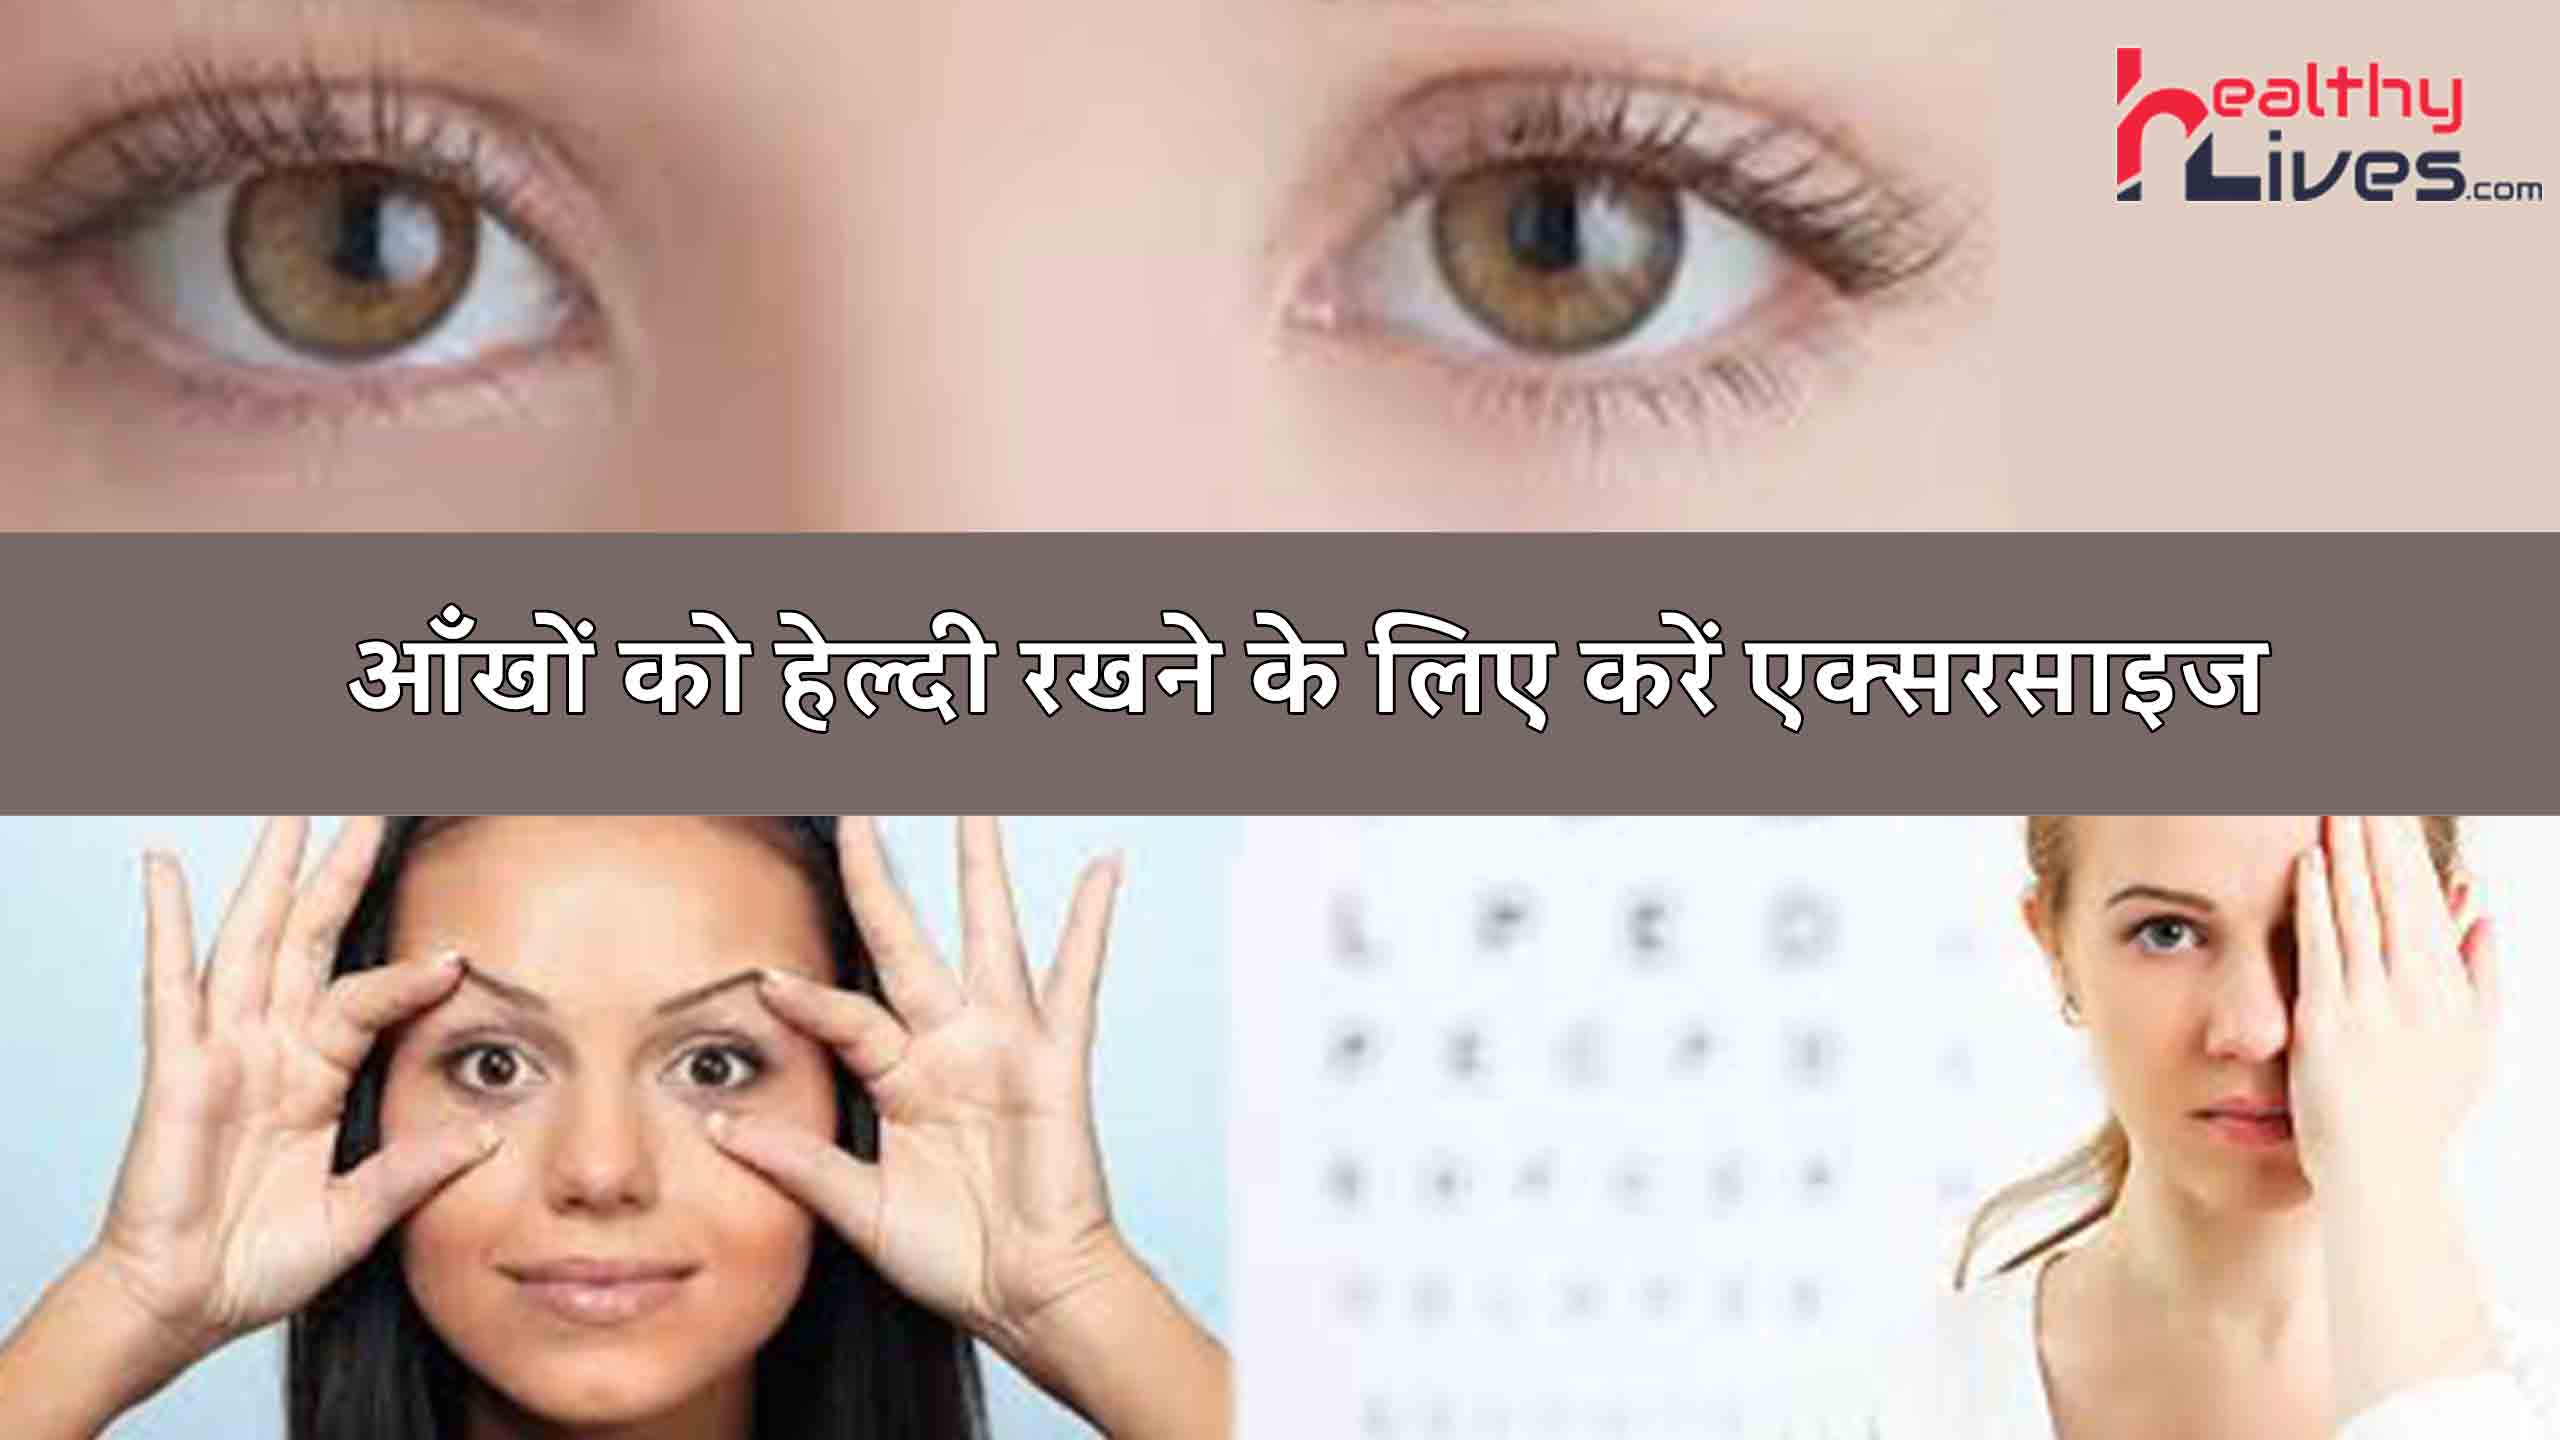 Eye Exercises: आंखो का ख्याल रखने के लाभकारी व्यायाम का करें नियमित अभ्यास